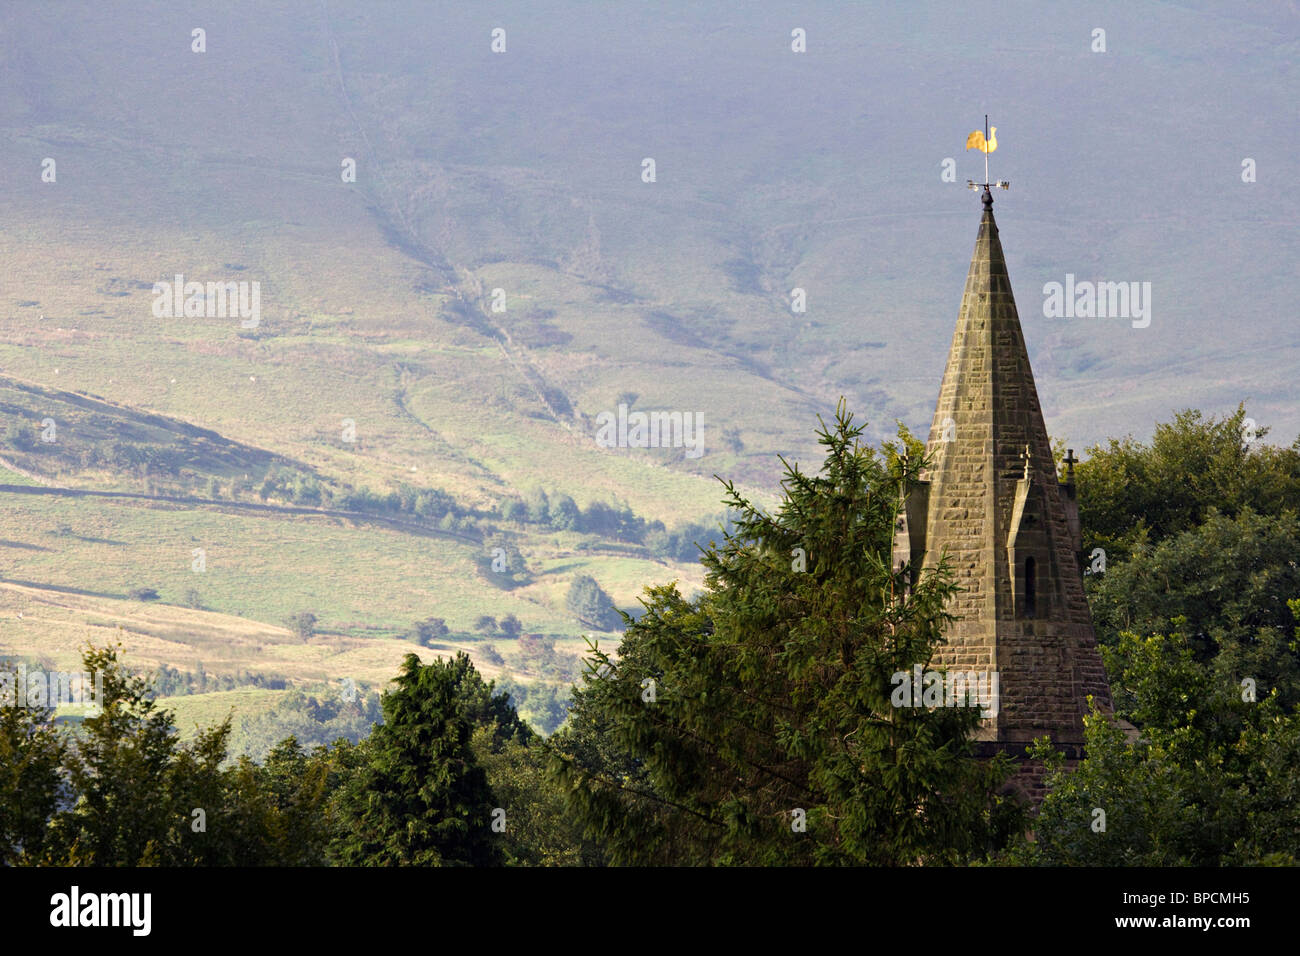 Edale chiesa parrocchiale derbyshire Peak District Inghilterra uk gb Foto Stock